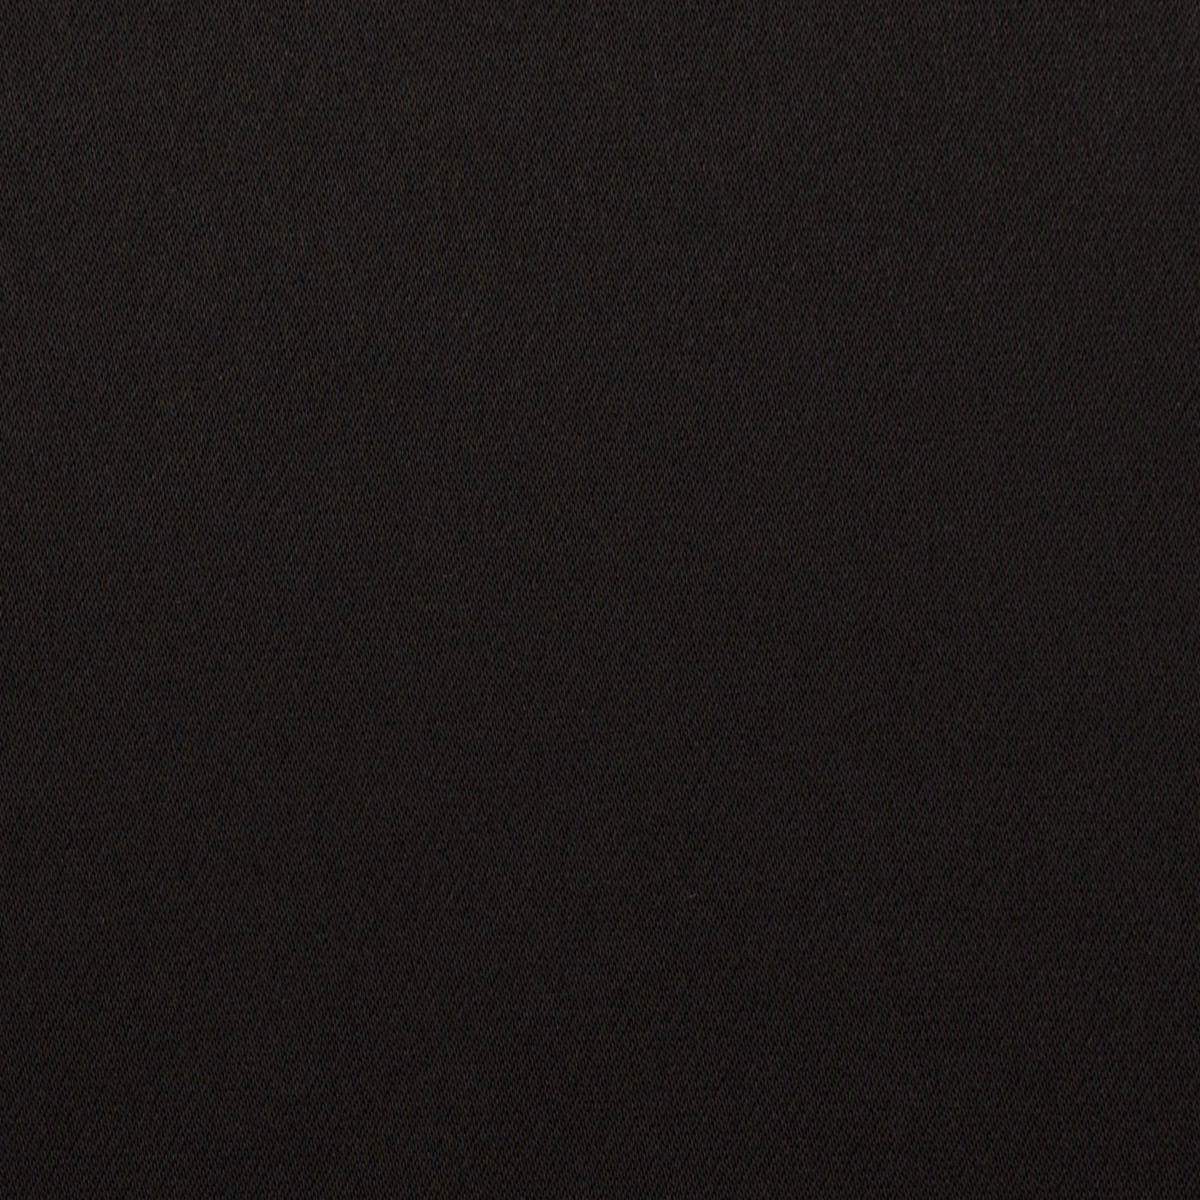 【アウトレット】トリアセテート混×無地(ブラック)×サテン二重織のサムネイル